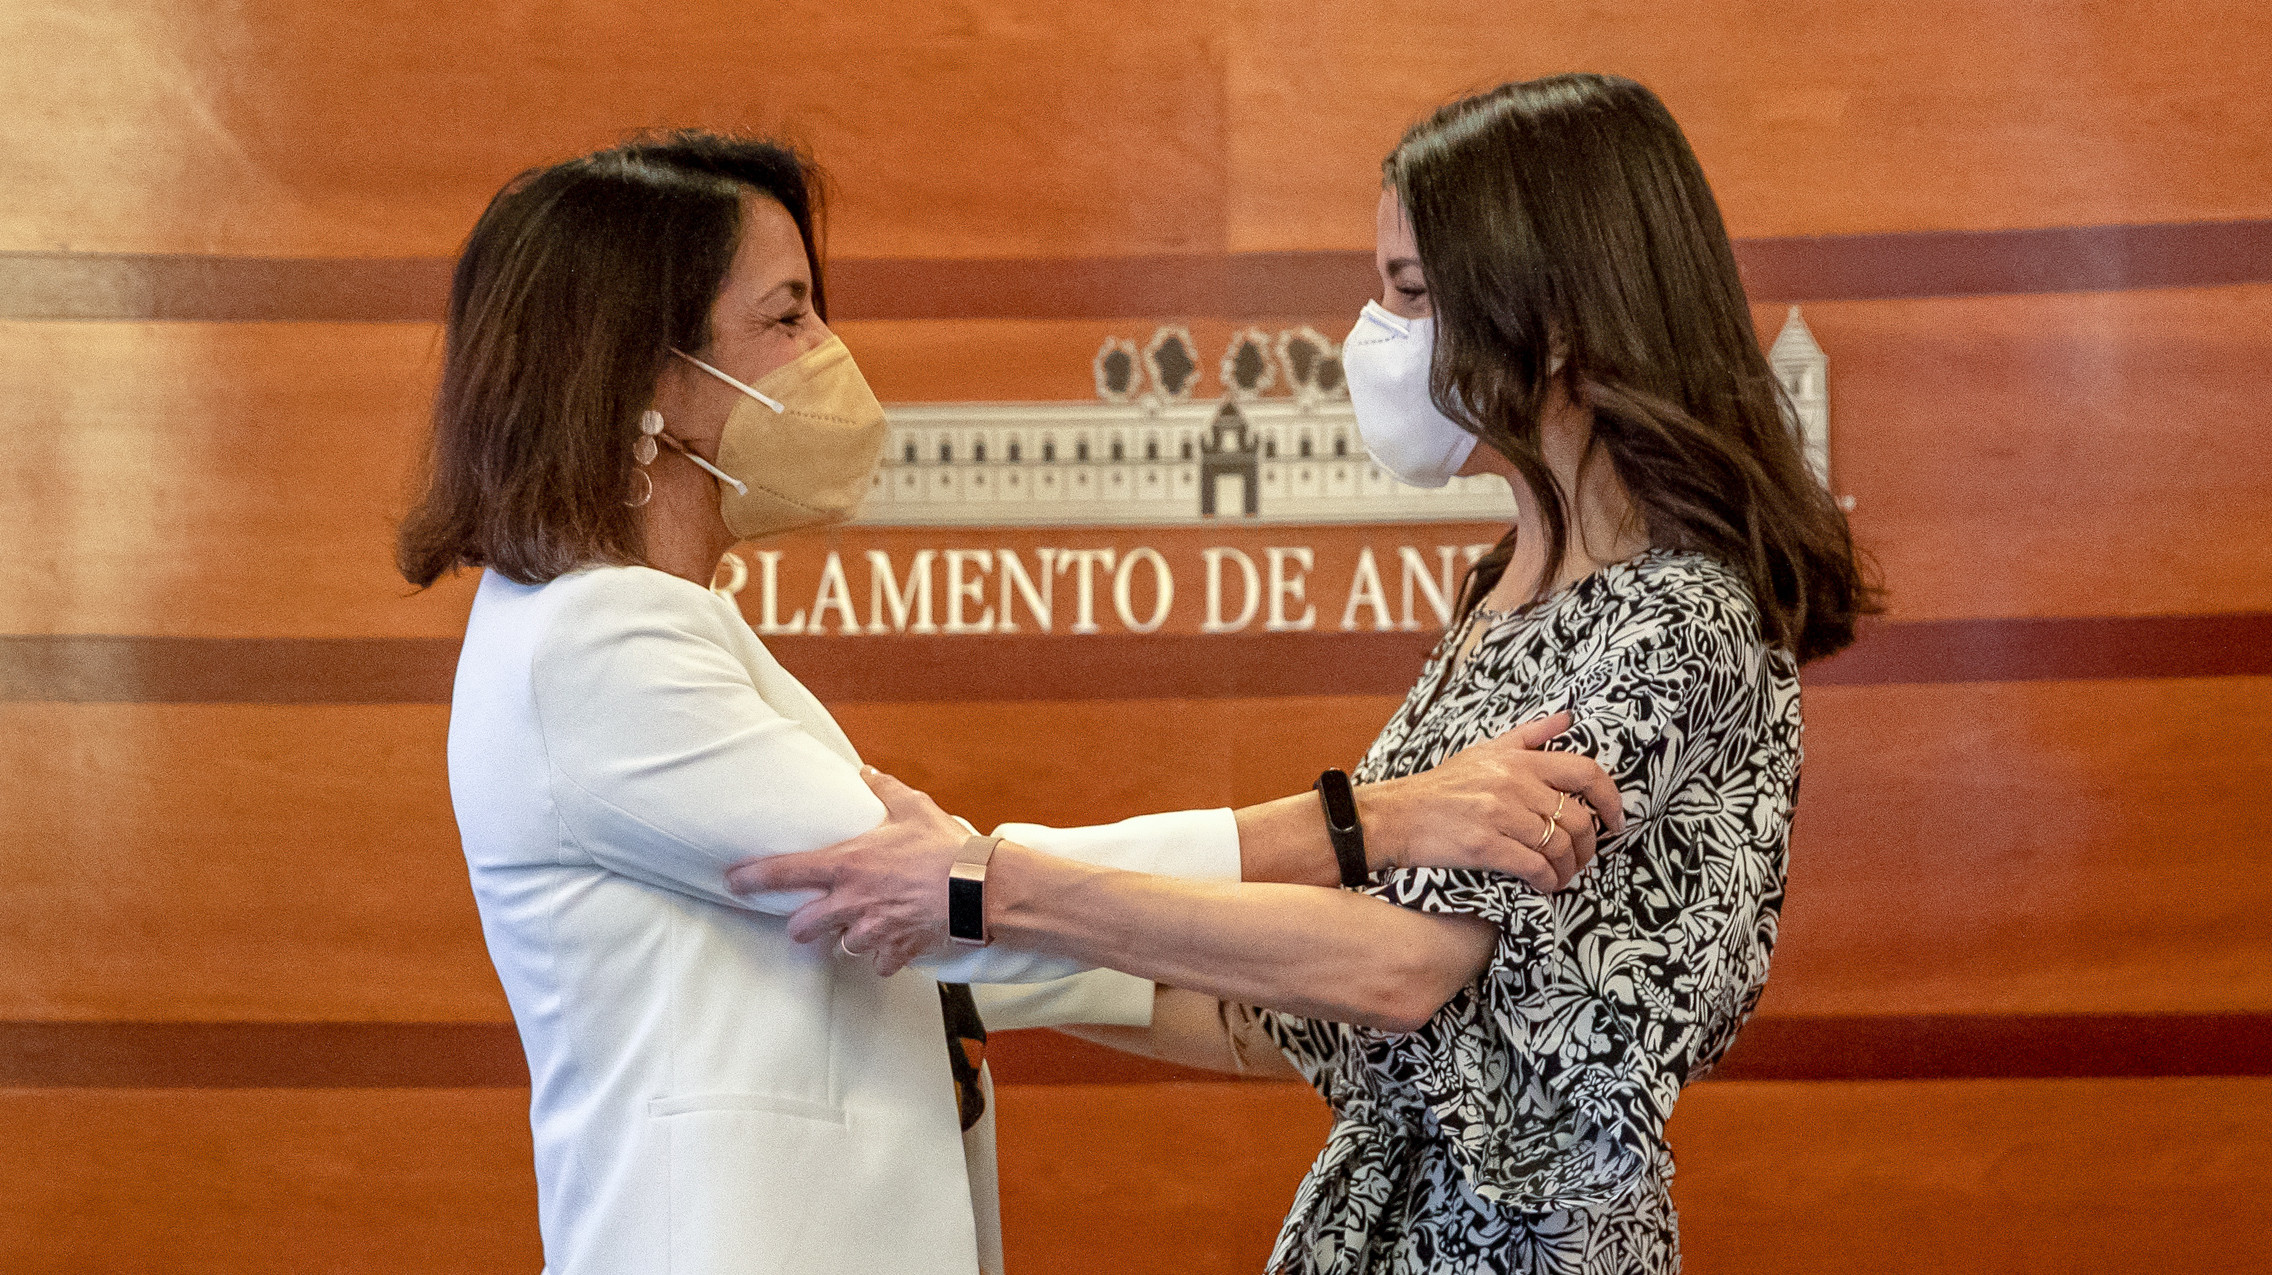 La presidenta de Ciudadanos (Cs), Inés Arrimadas, se reúne con la presidenta del Parlamento de Andalucía, Marta Bosquet.